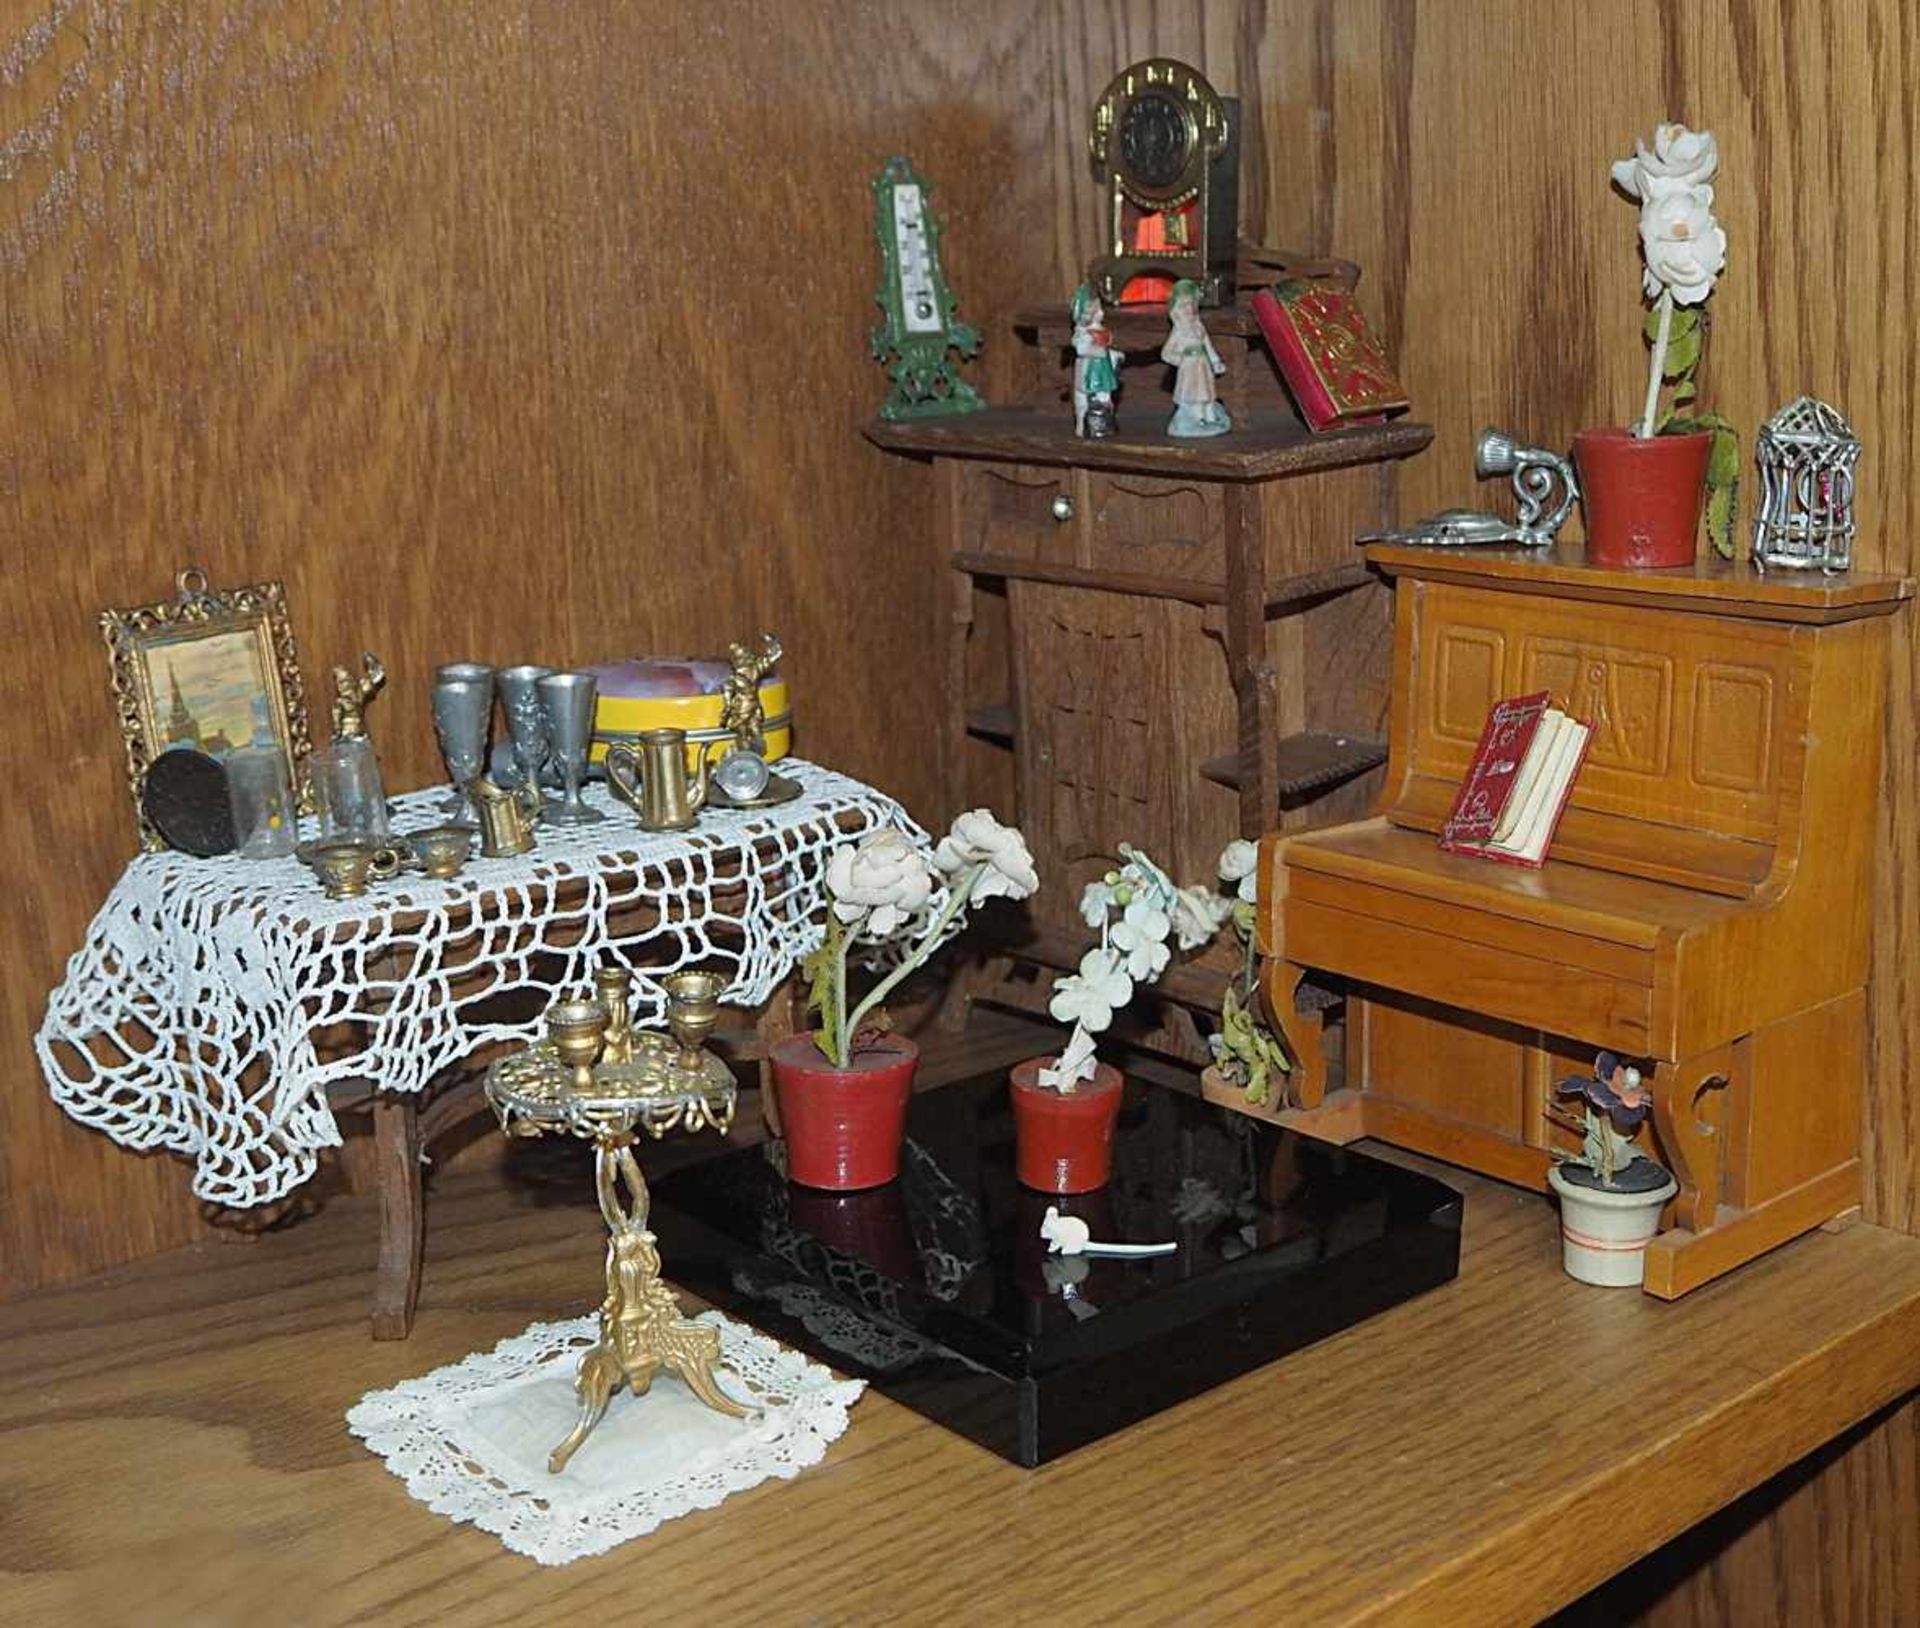 1 Konv. Puppenstubenmöbel mit kleinen Puppenversch. Möbel wie z.B. Klavier, Garderobenspiegel, - Bild 2 aus 2